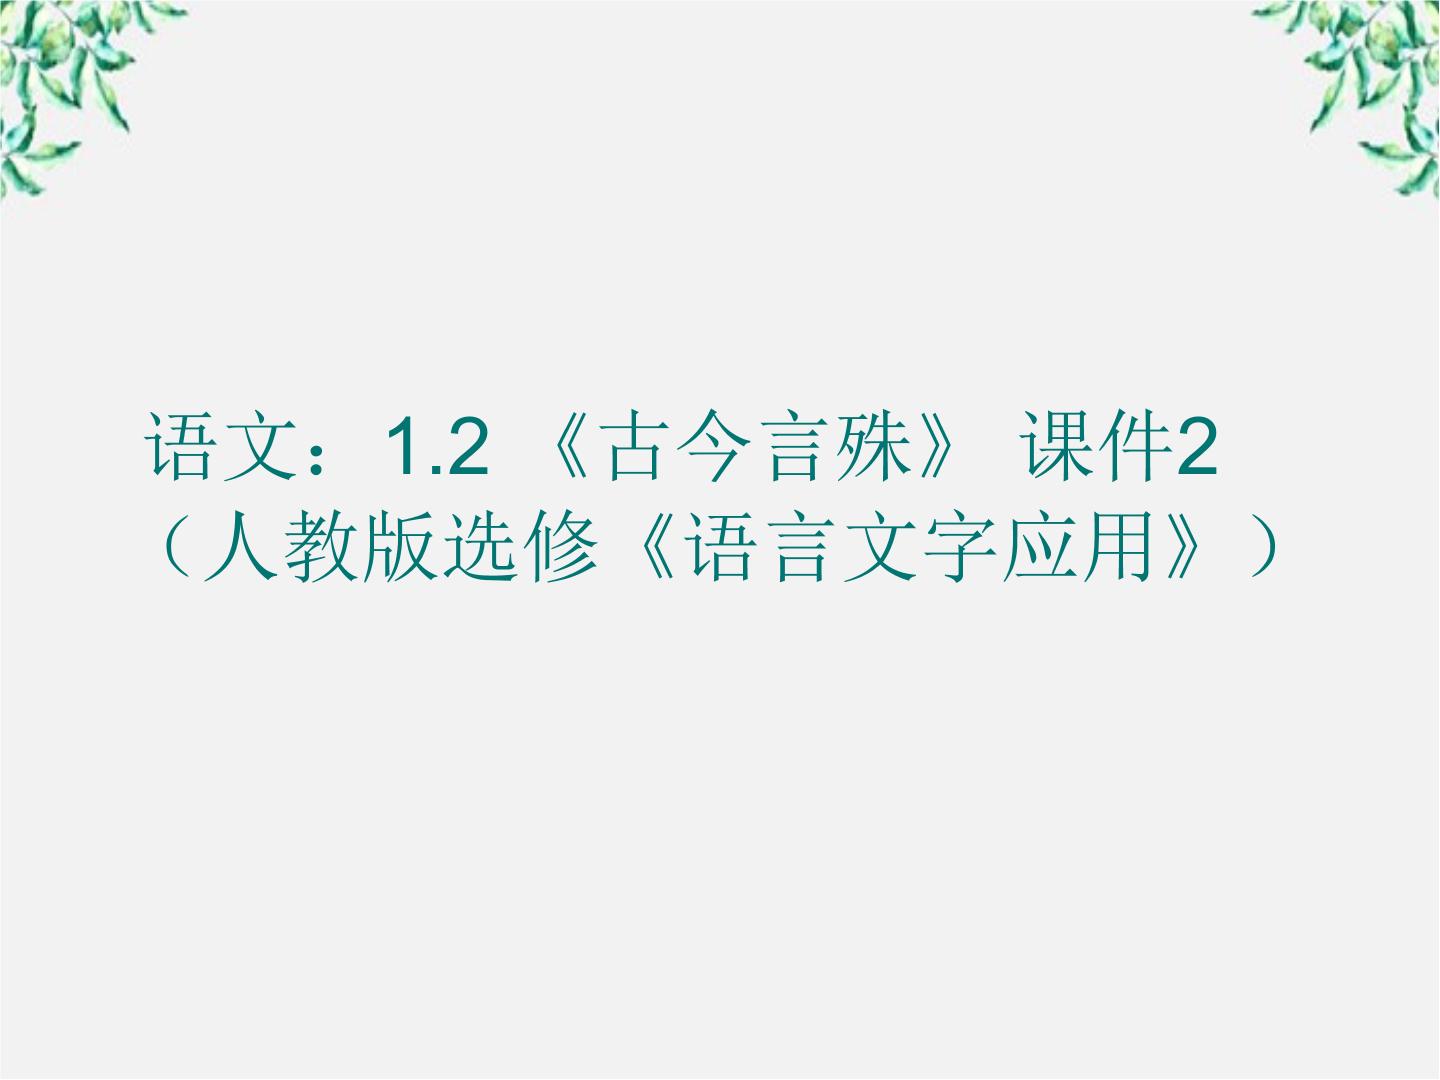 高中语文第二节 古今言殊---汉语的昨天和今天背景图课件ppt